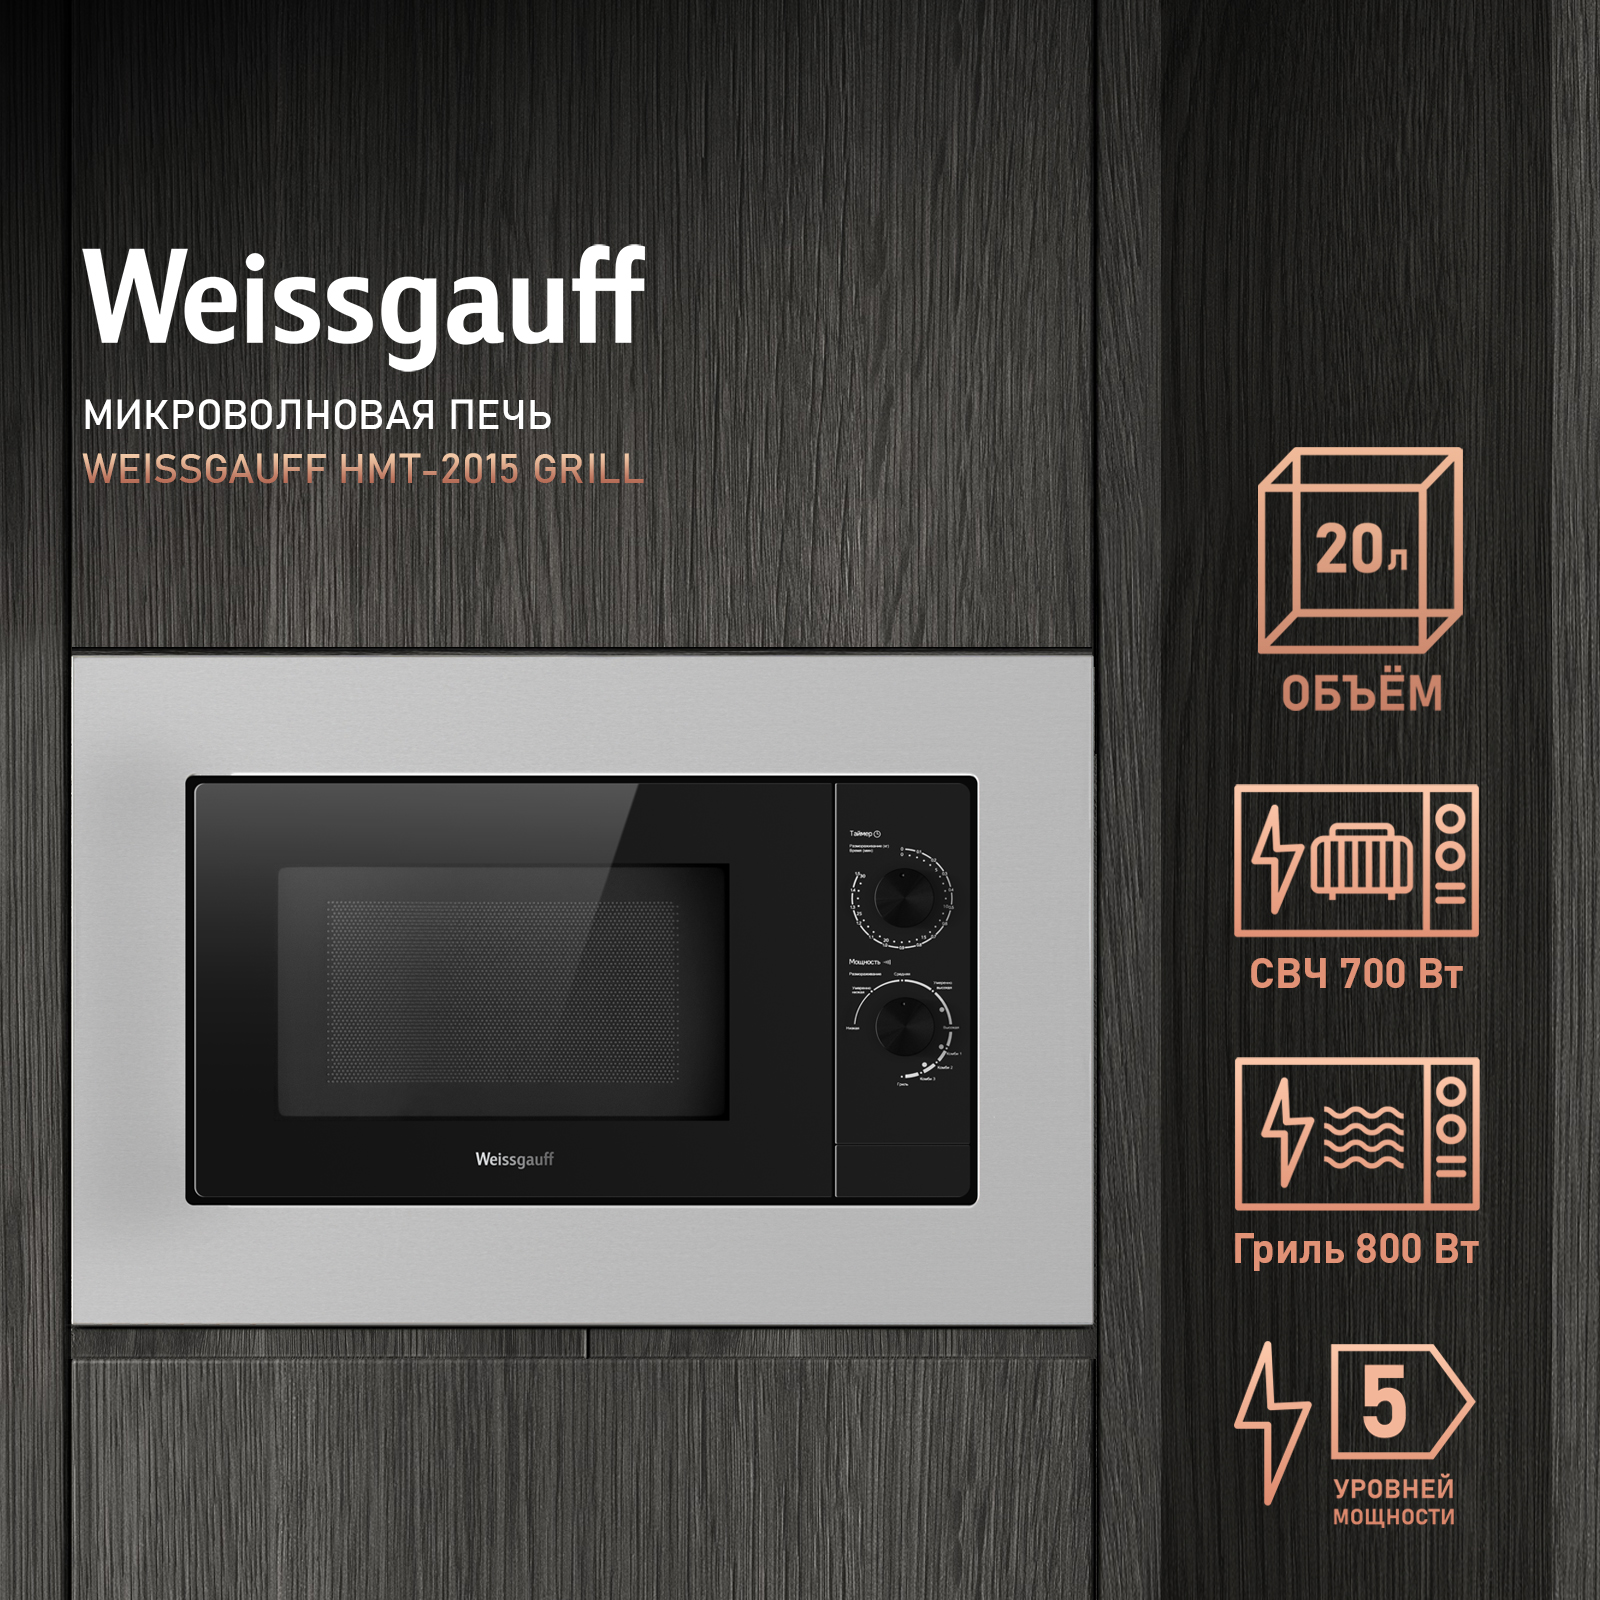 Встраиваемая микроволновая печь Weissgauff HMT-2015 Grill серебристая встраиваемая микроволновая печь weissgauff hmt 620 bg grill